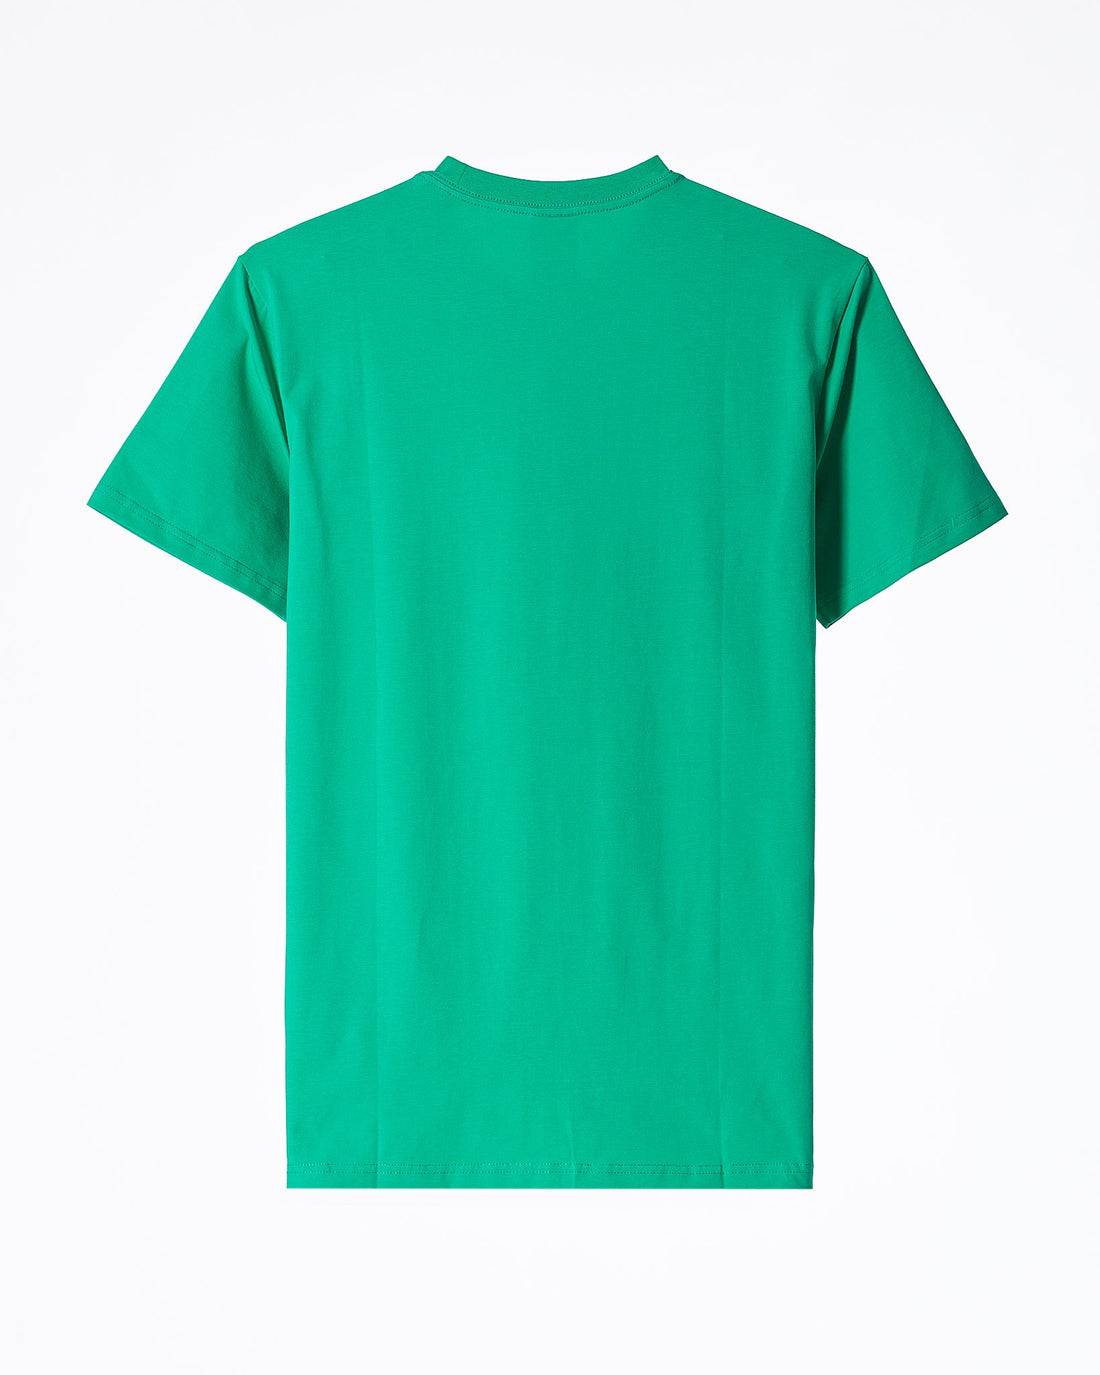 MOI OUTFIT-AD Emboss Men Green T-Shirt 16.90